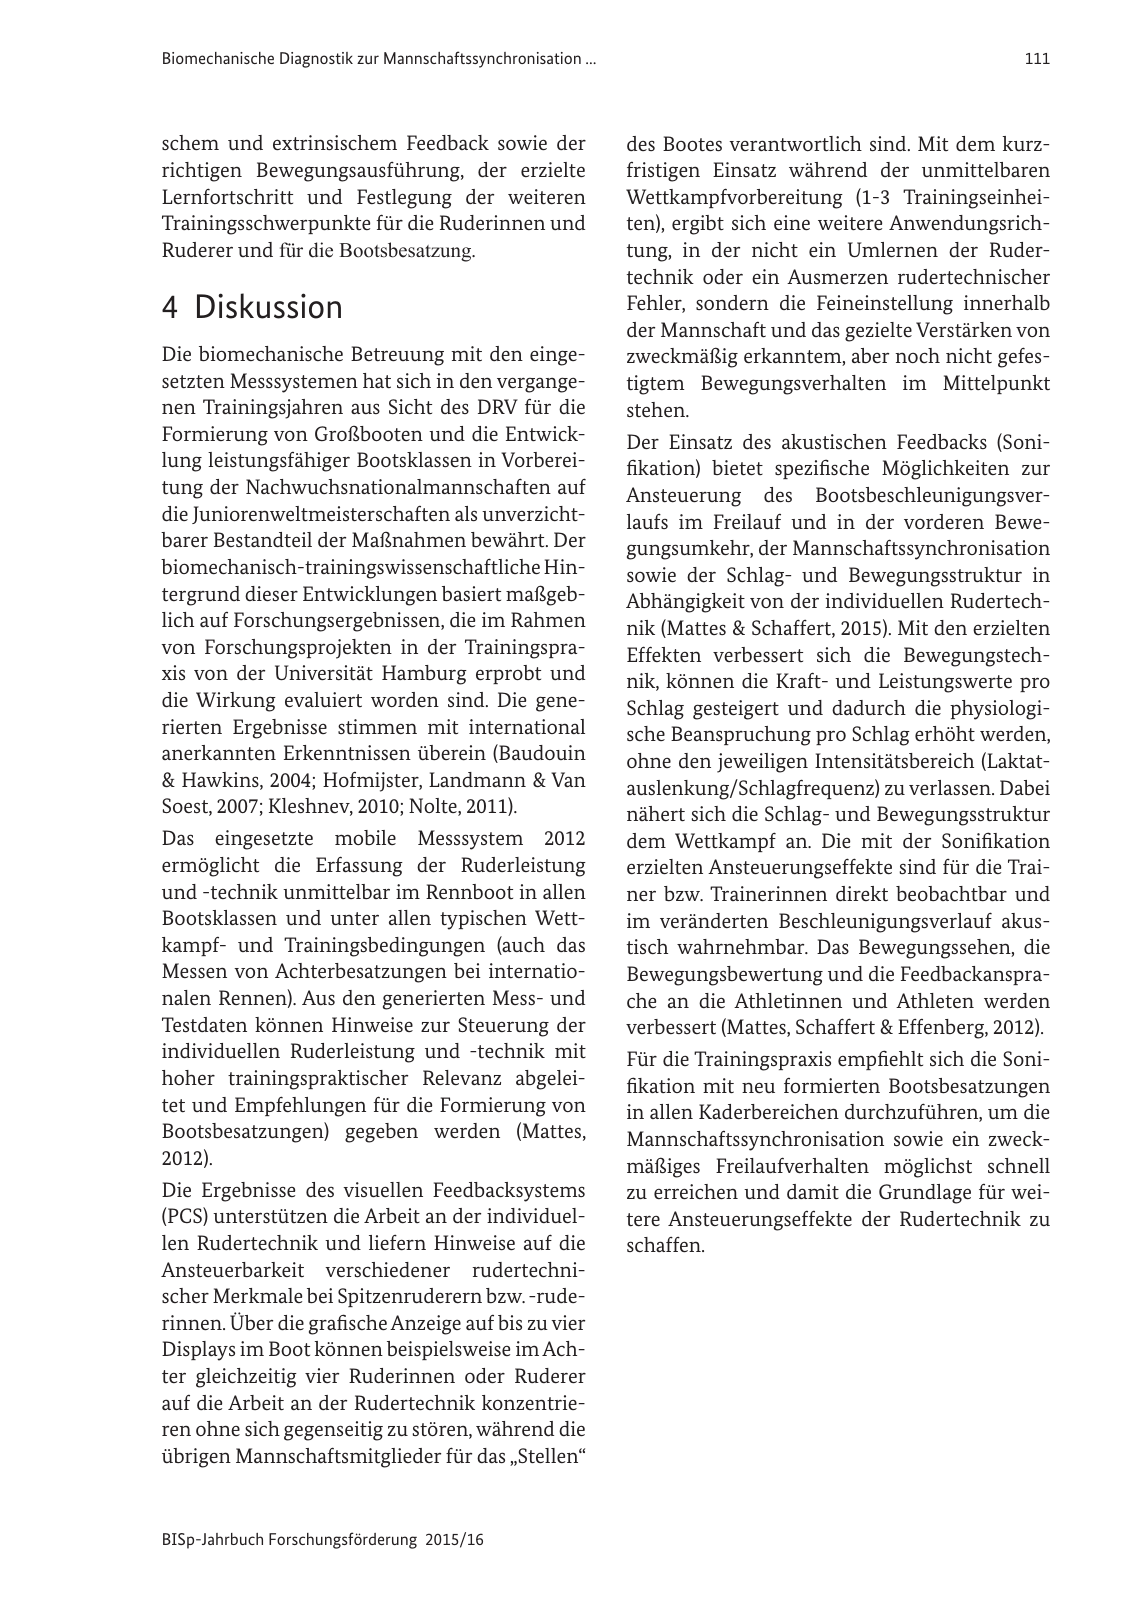 Vorschau BISp-Jahrbuch Forschungsförderung 2015/16 Seite 113